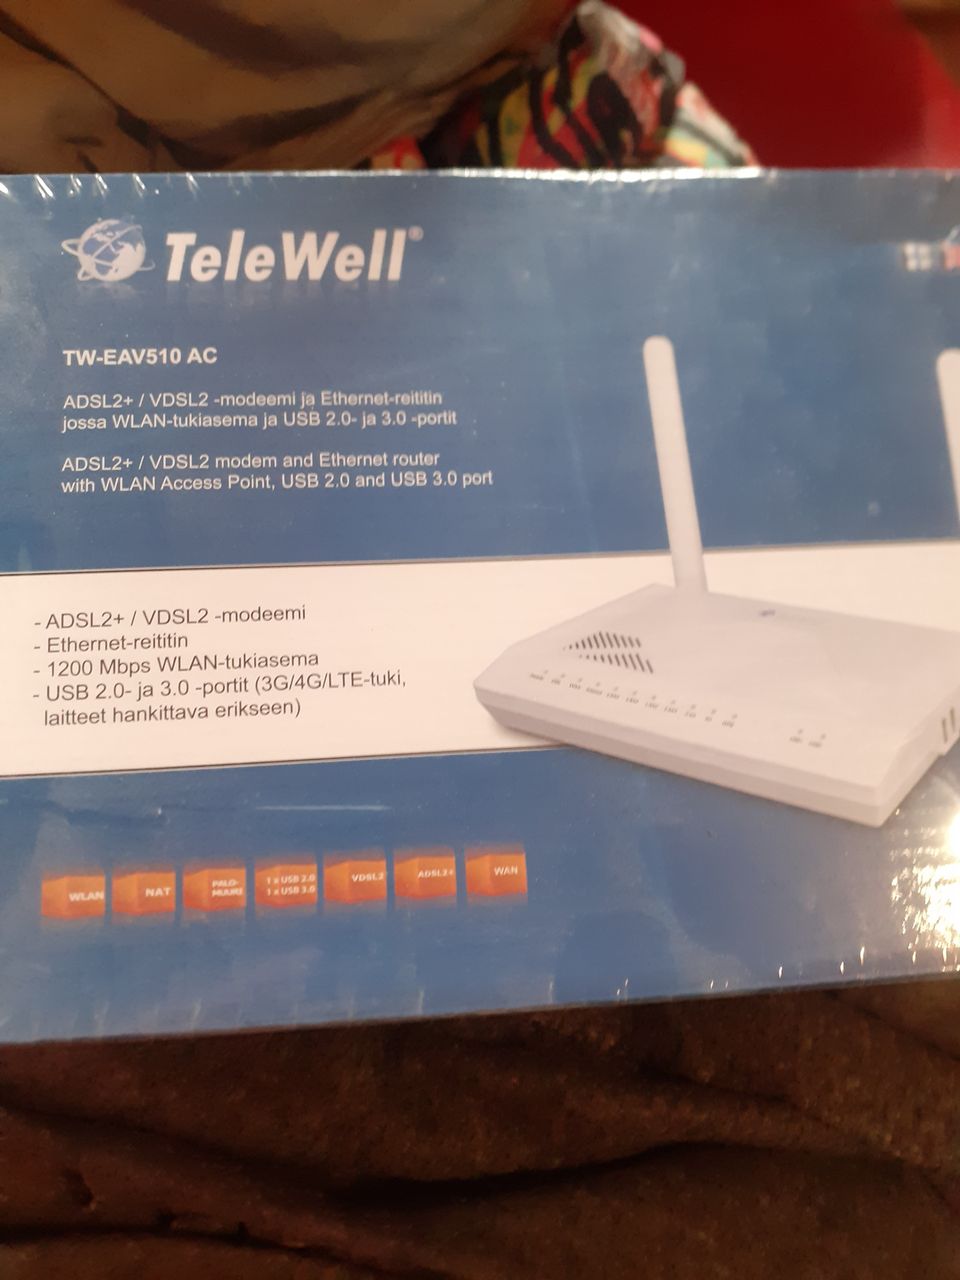 TeleWell-Eav510 AC